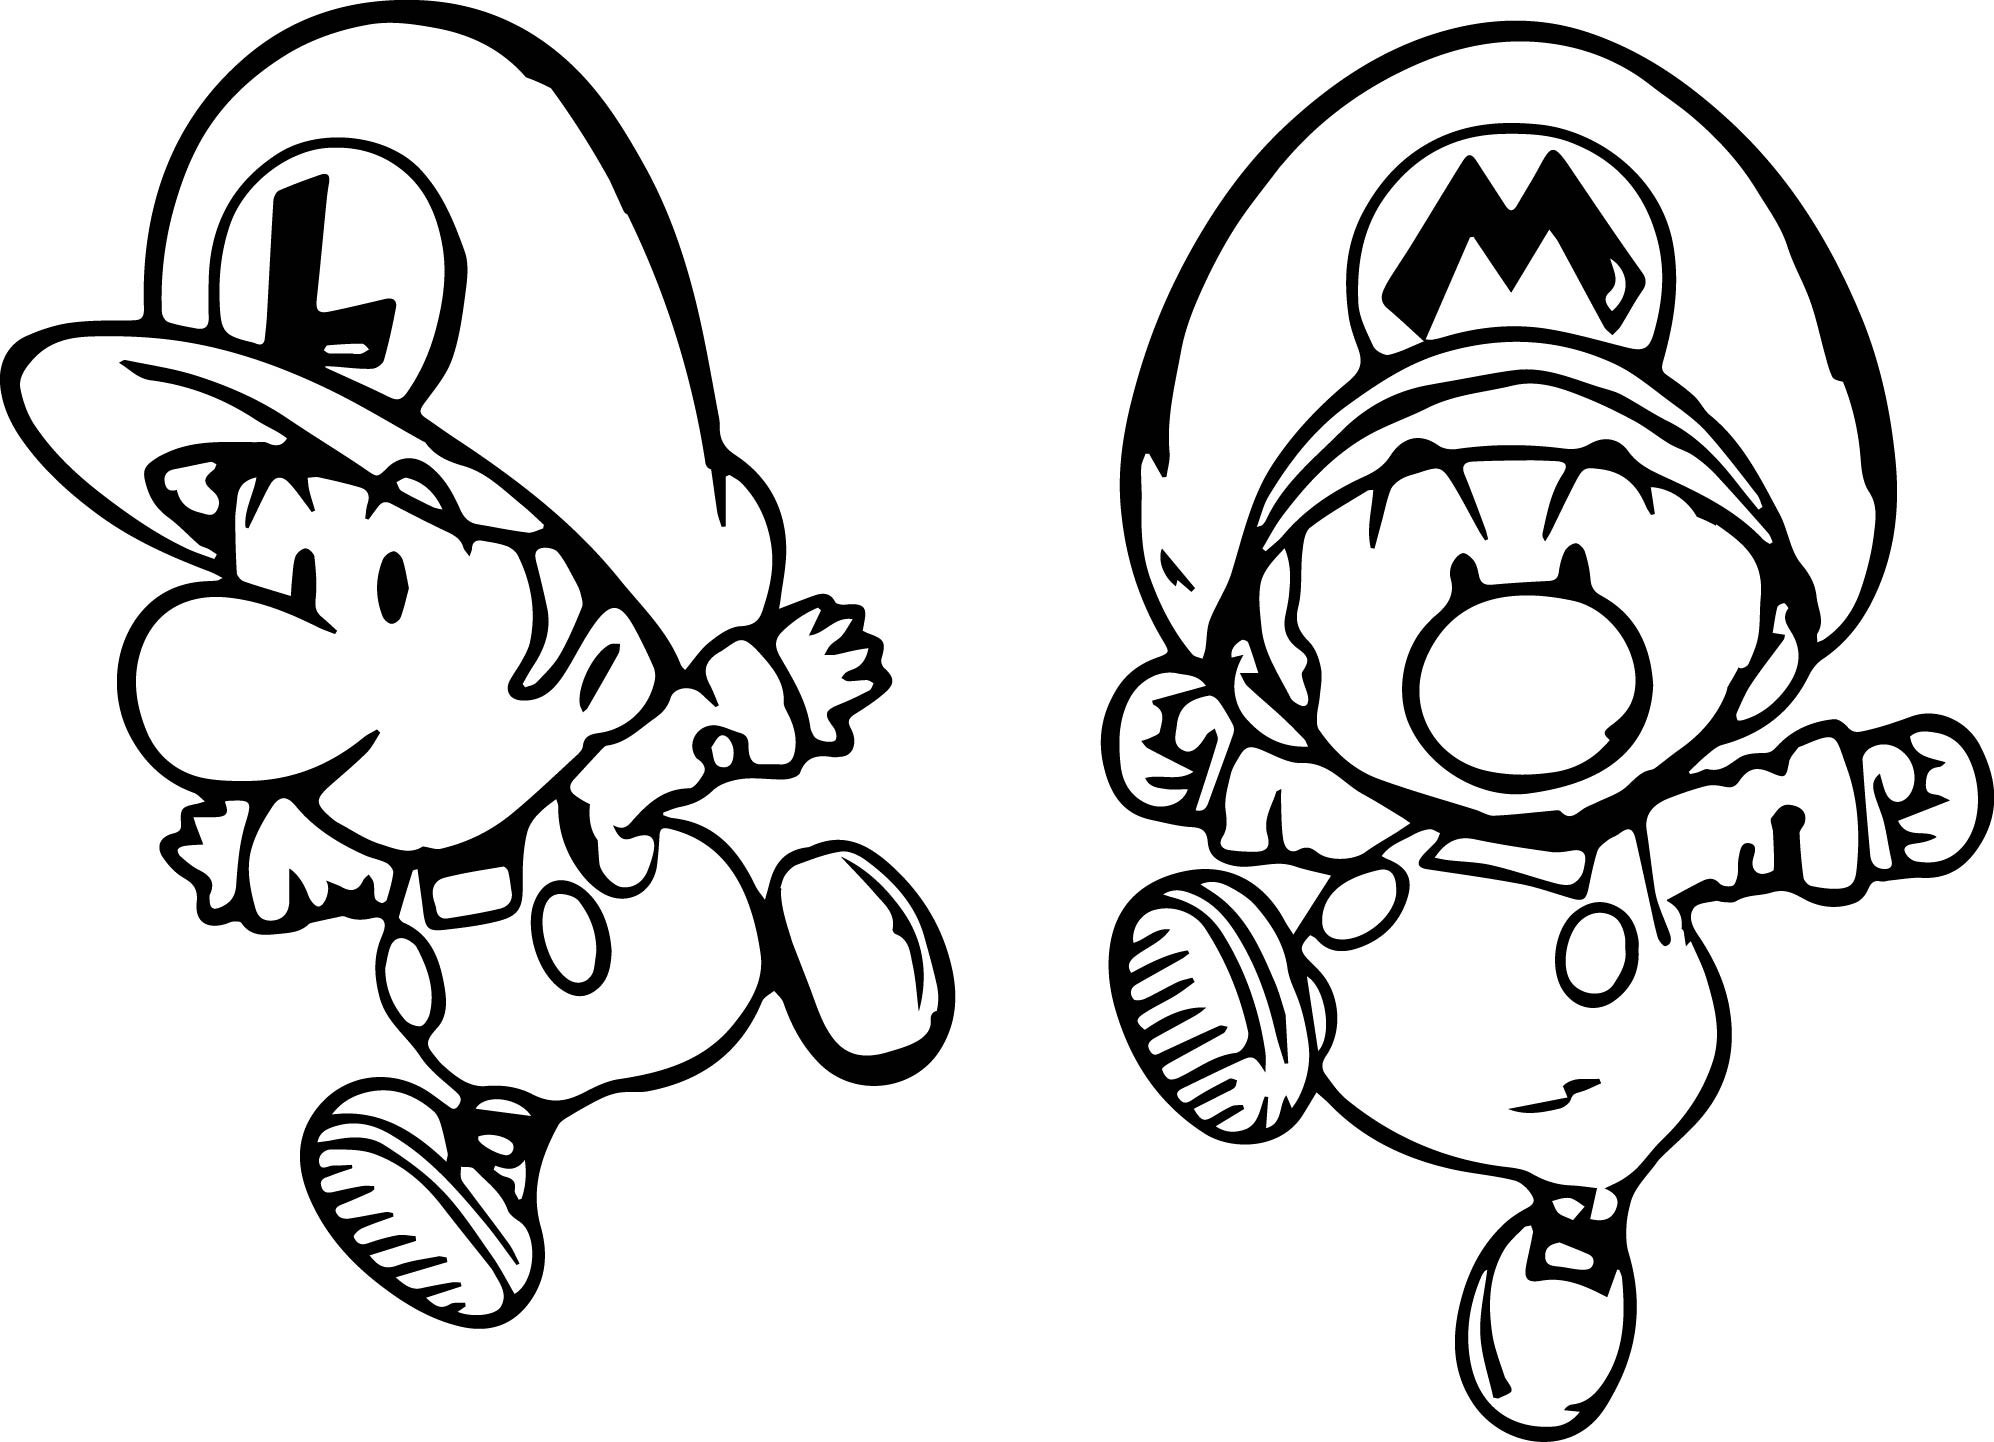  Mario Luigi Coloring Pages 